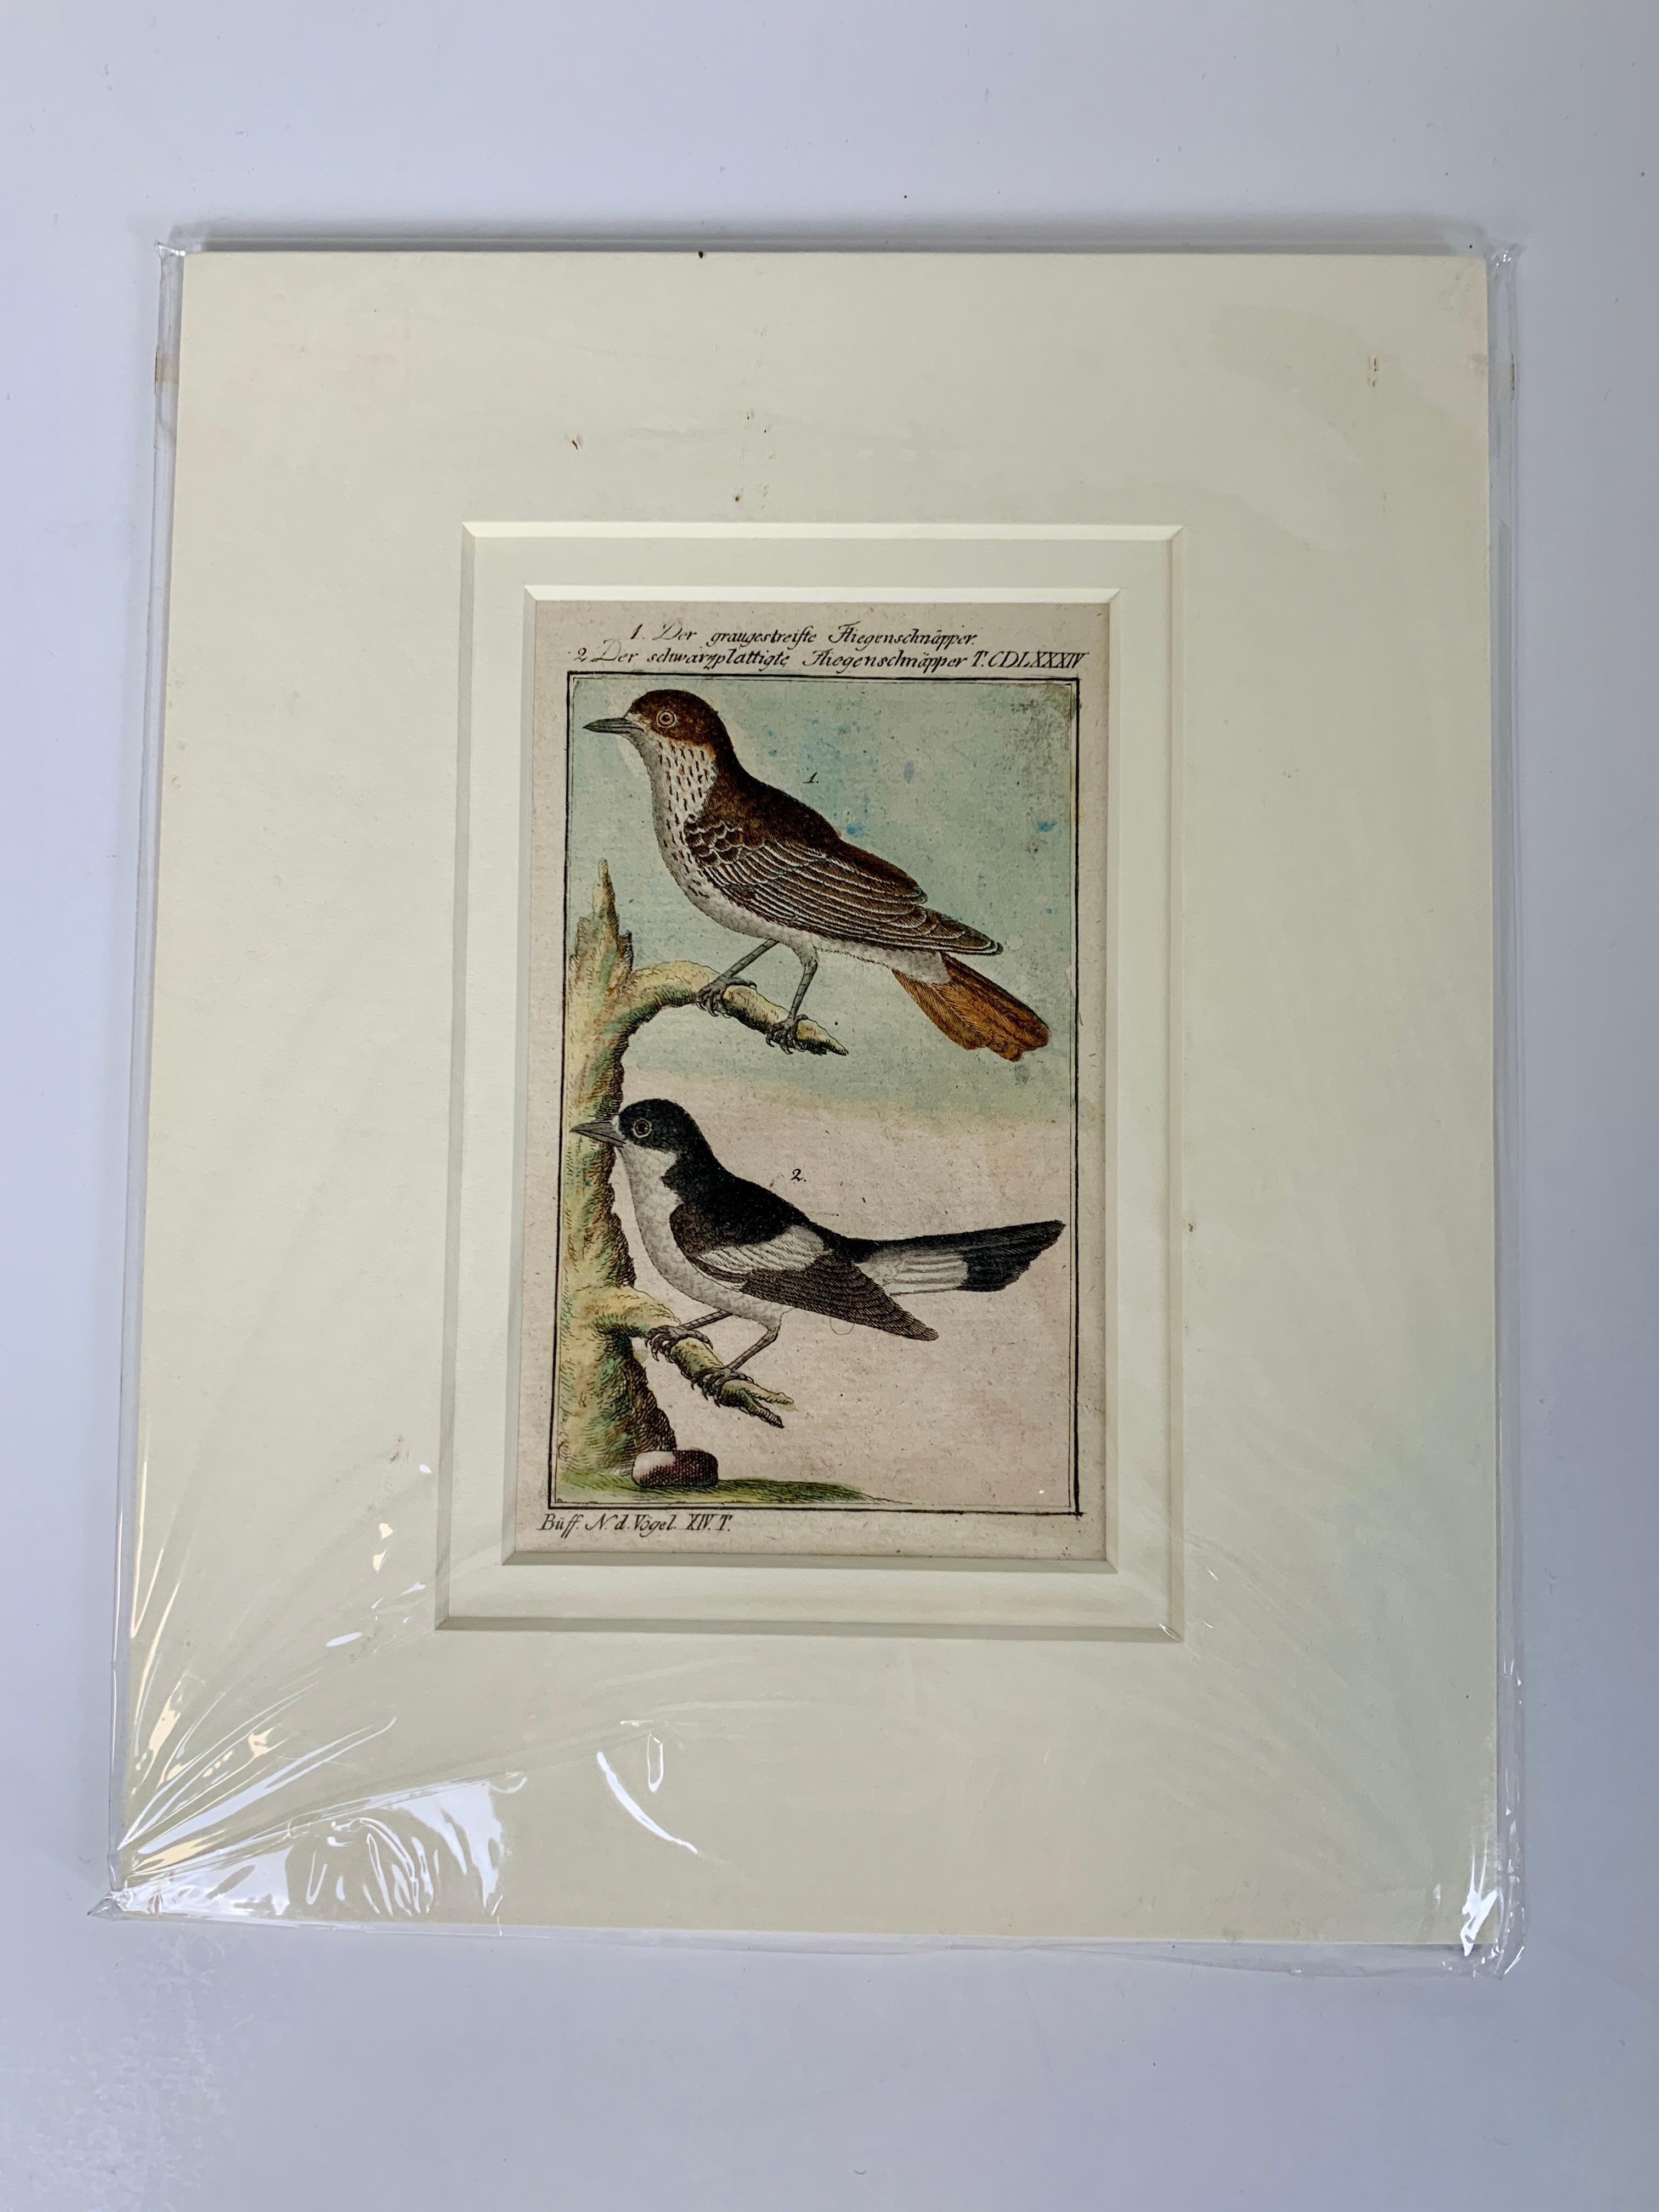 Gravures d'oiseaux françaises colorées à la main 18e siècle par Francois-Nicolas Martinet 4